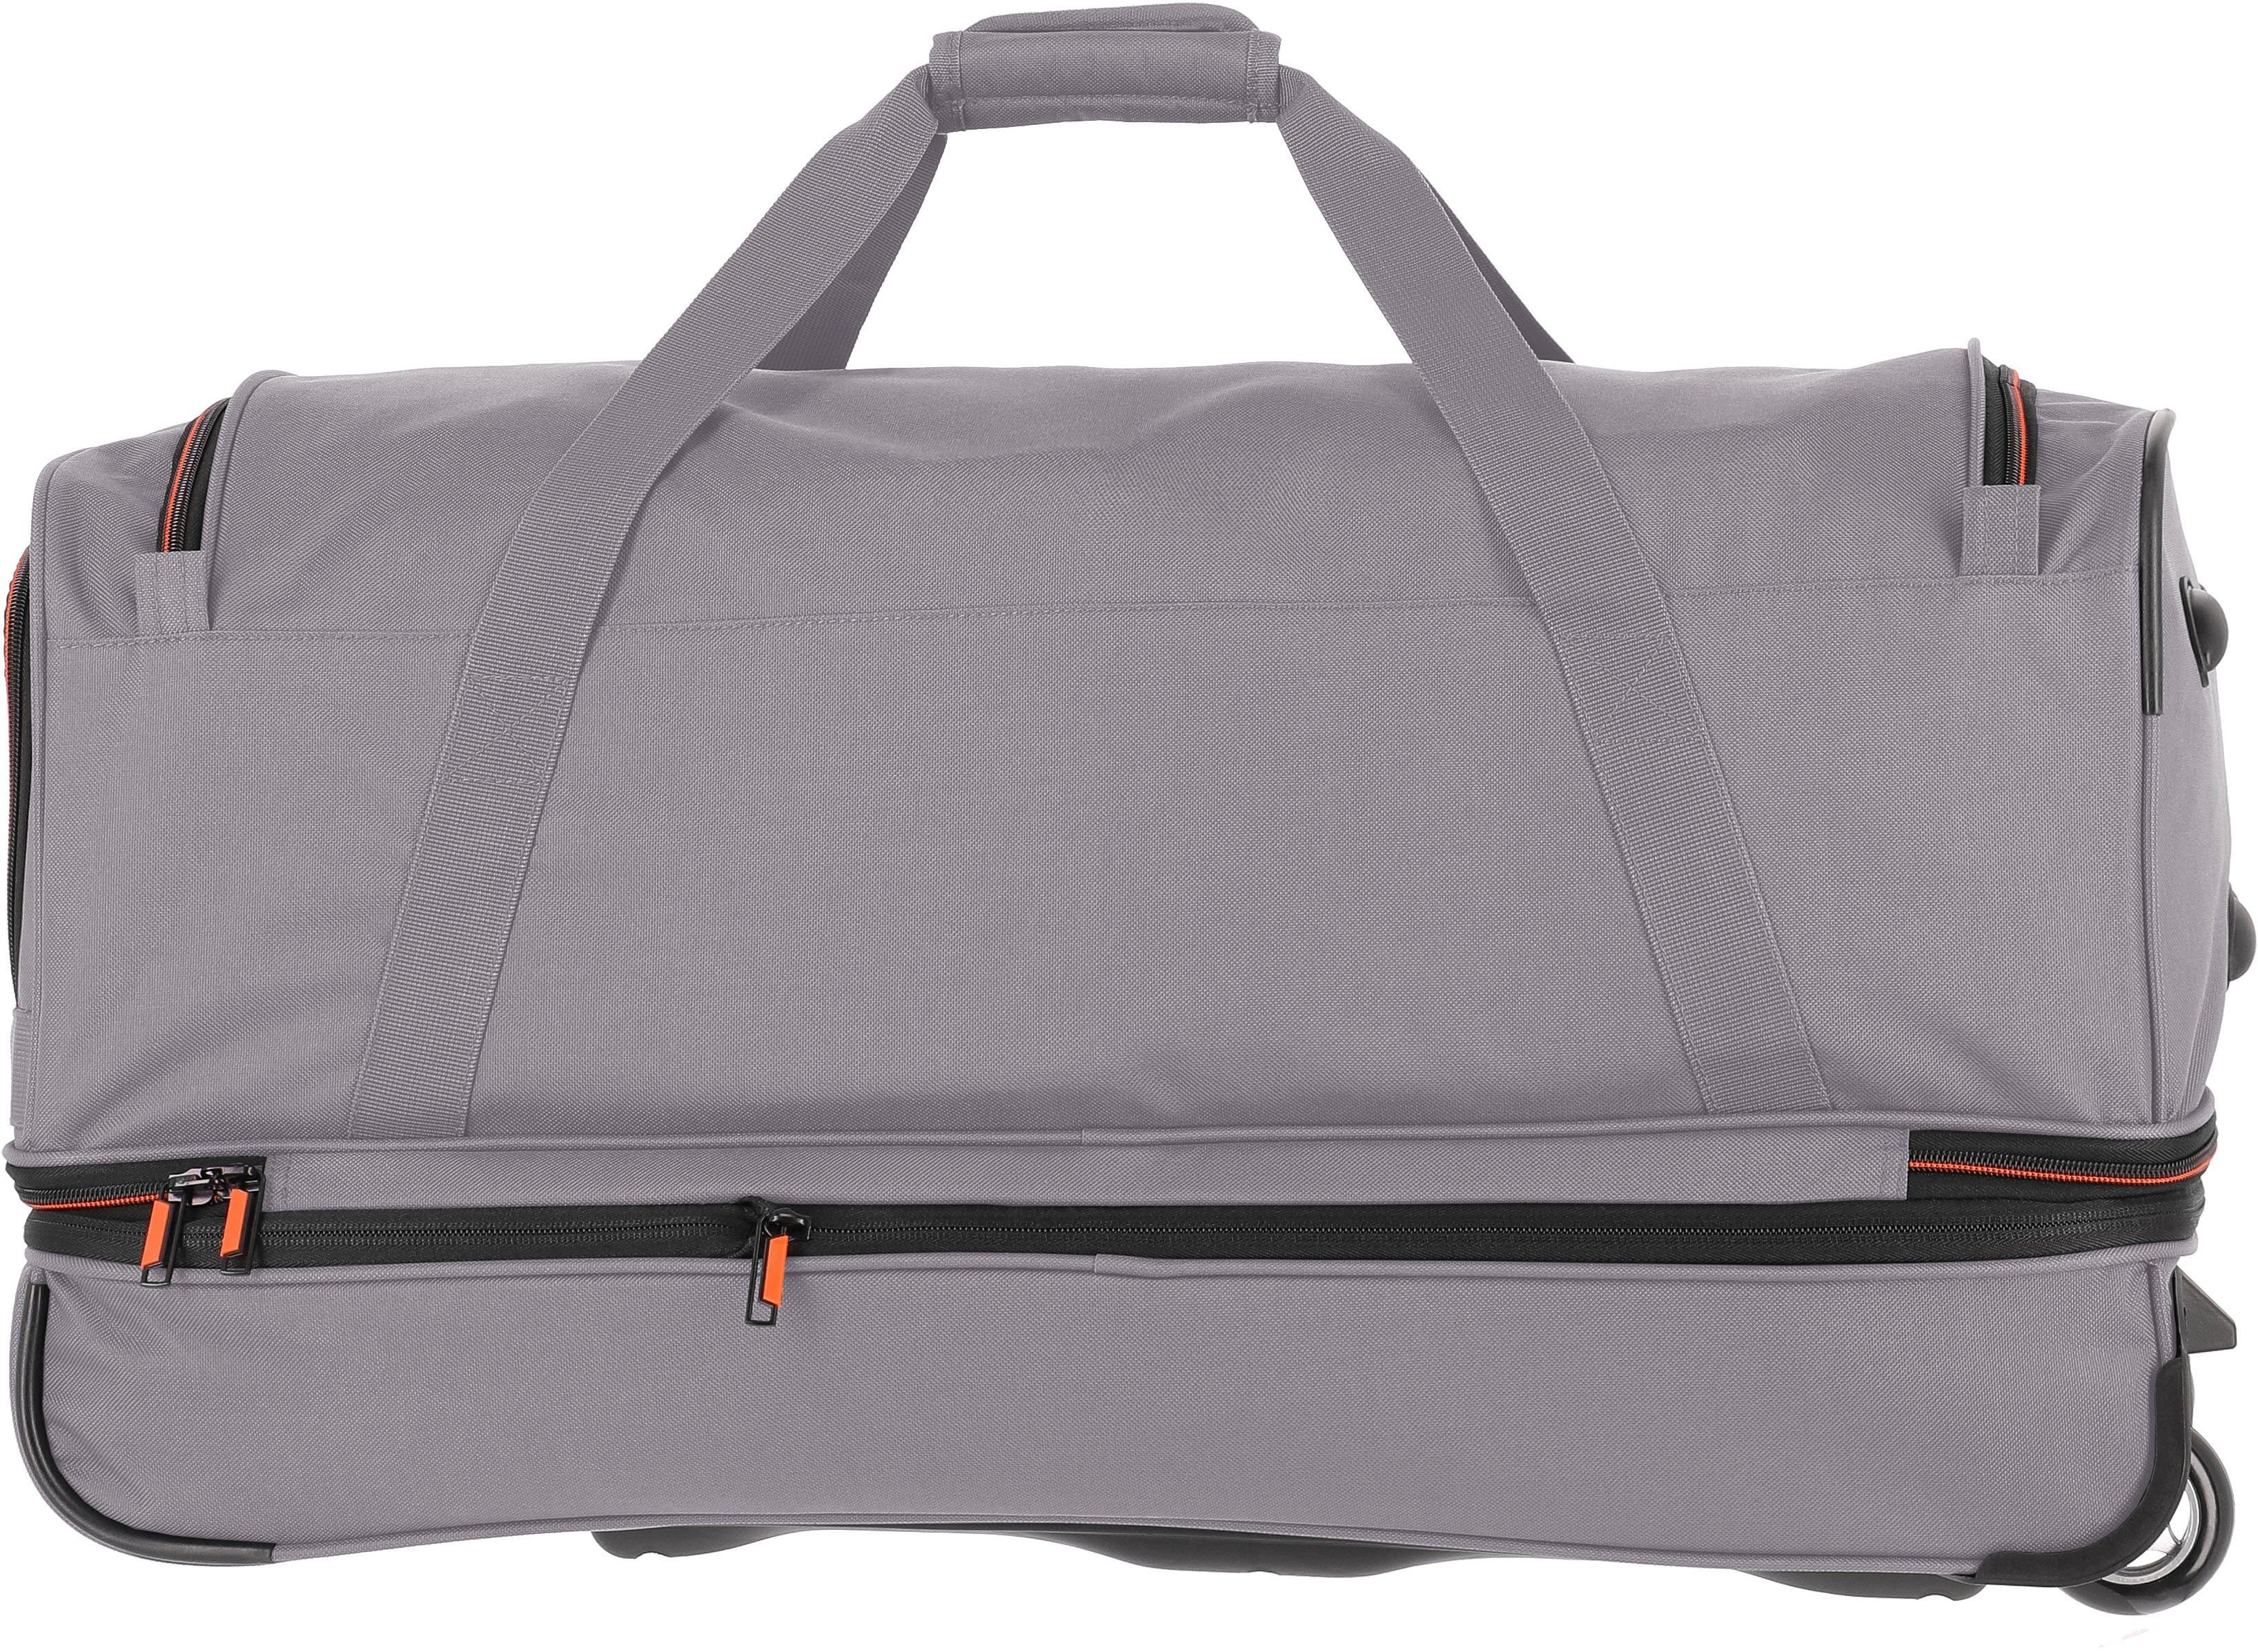 travelite Reisetasche Basics, 70 cm, und Volumenerweiterung mit Trolleyfunktion grau/orange